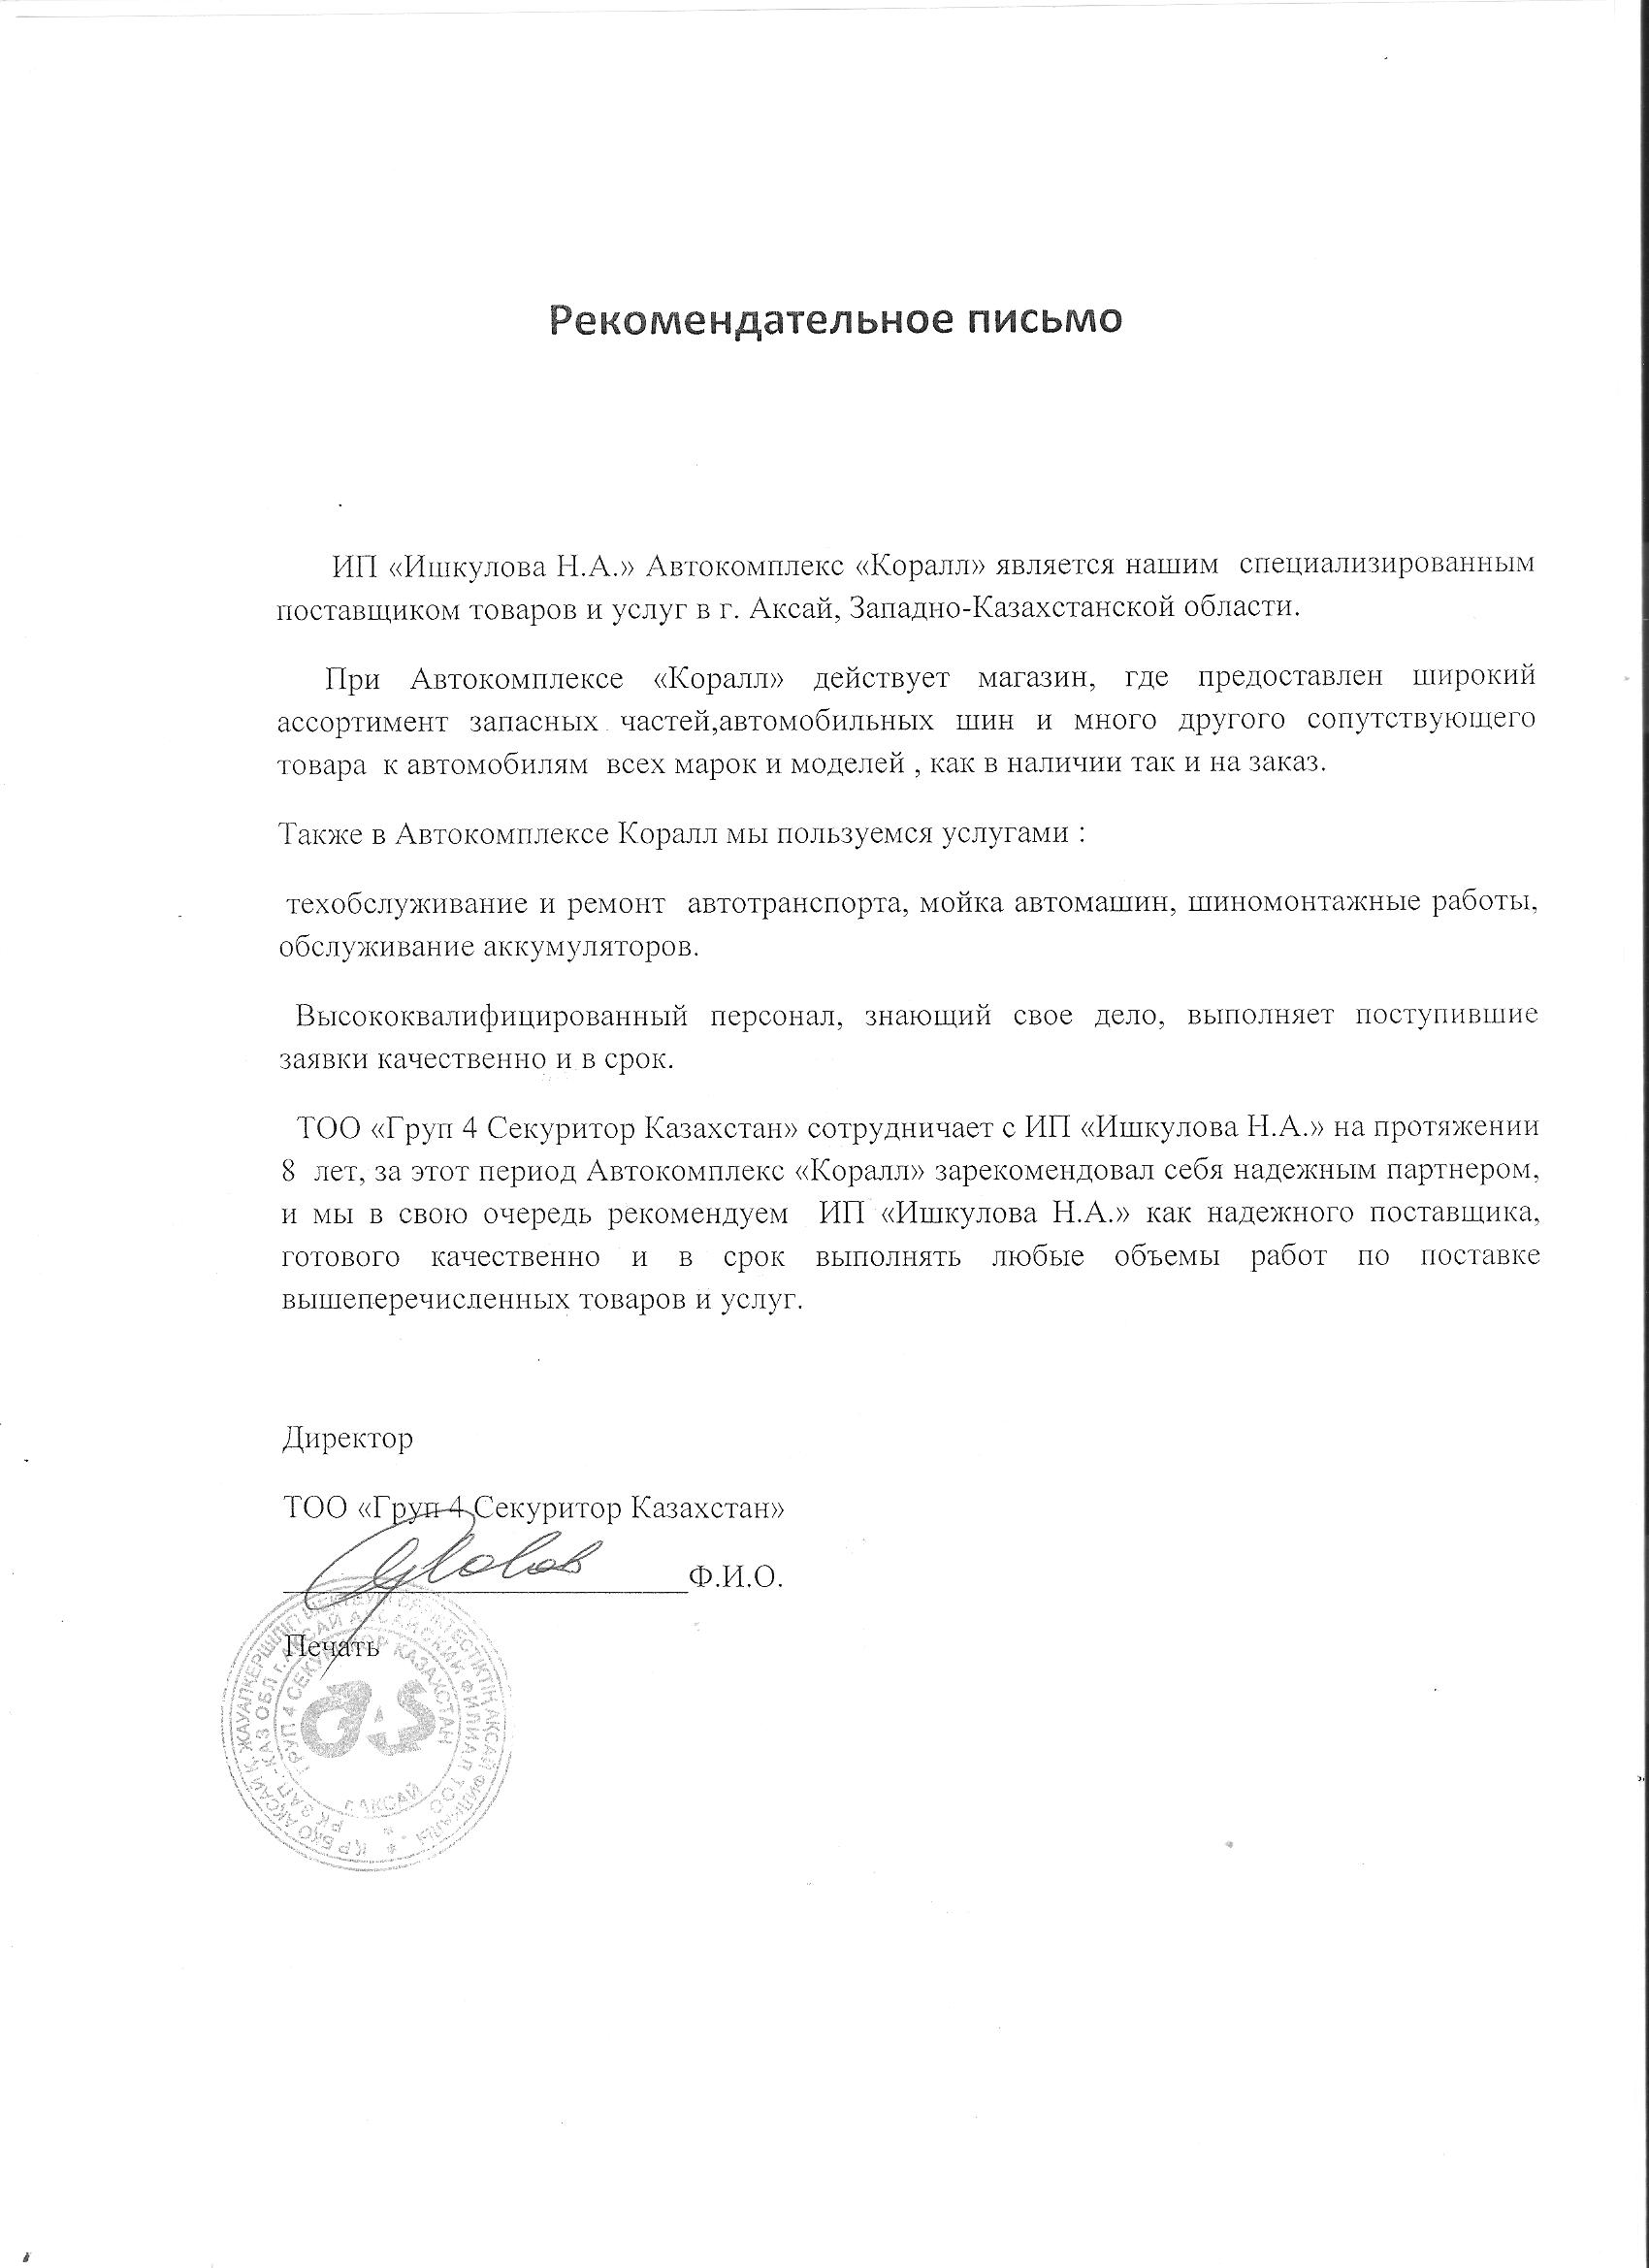 Рекомендательное письмо от Груп 4 Секуритор Казахстан